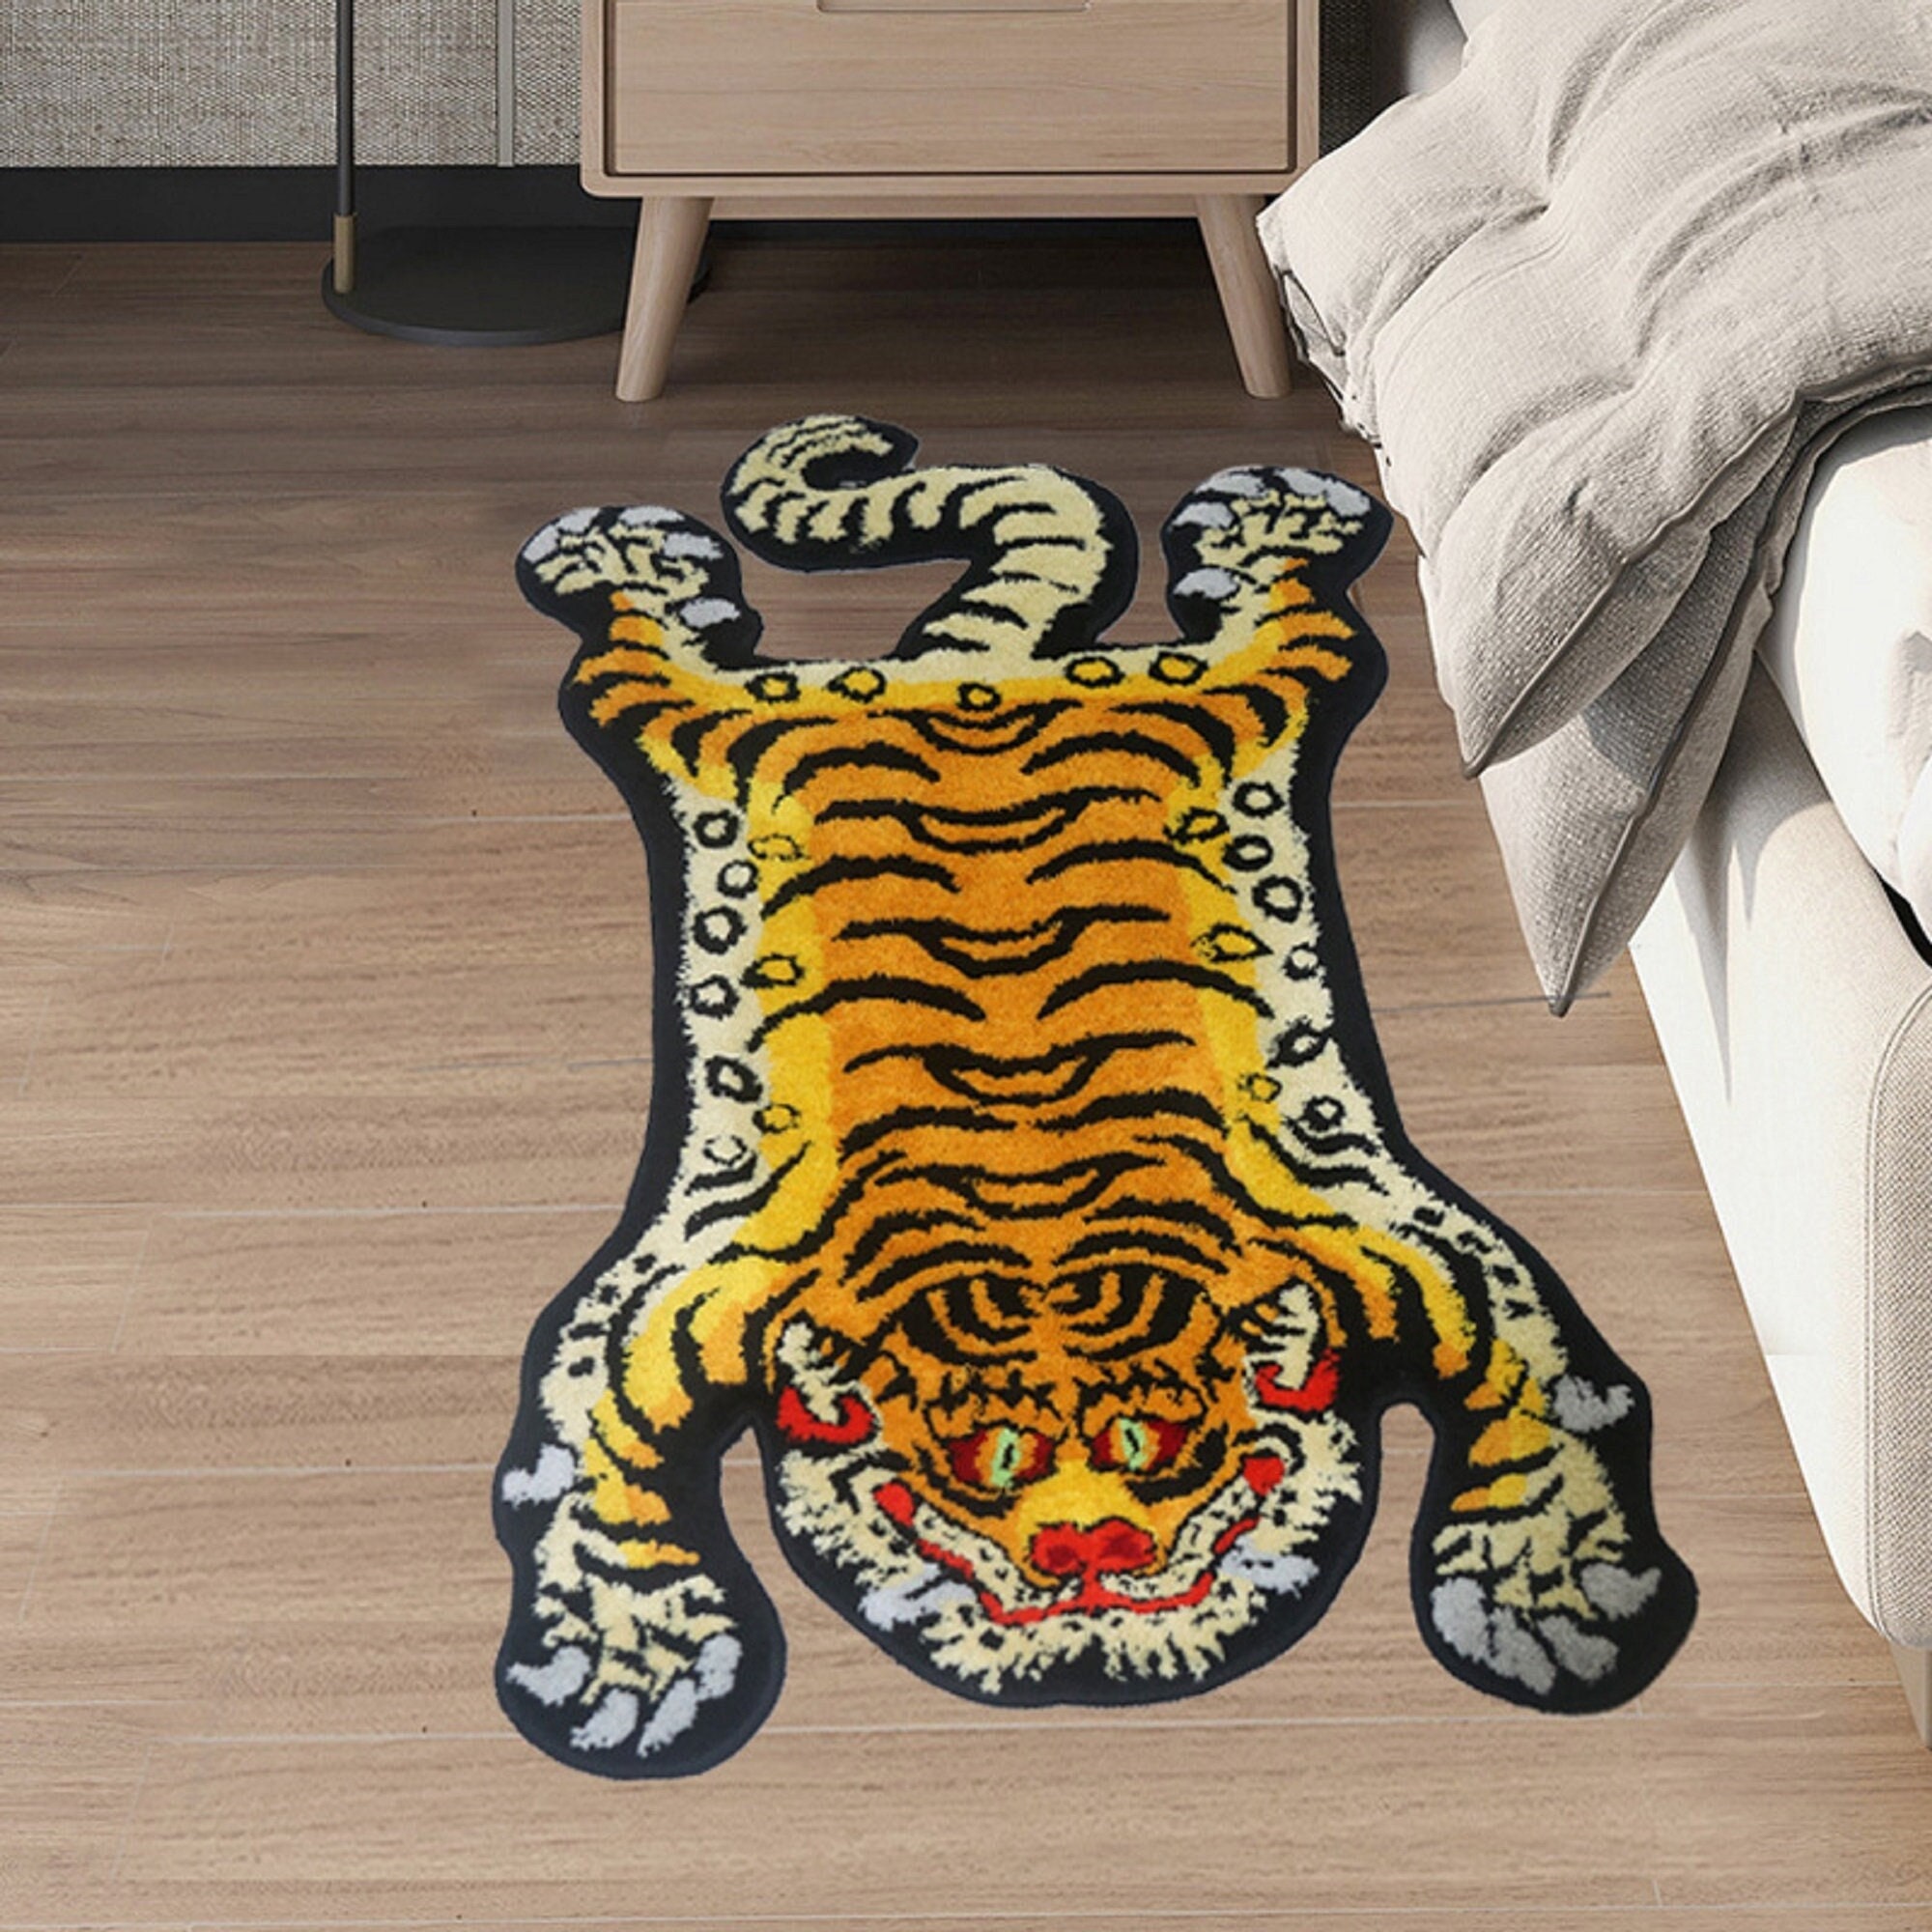 Human Made Rug Cartoon Tiger Lounge Rug Human Made Tiger Irregular Carpet  Luxury Bedroom Bedside Carpet Living Room Home Decor